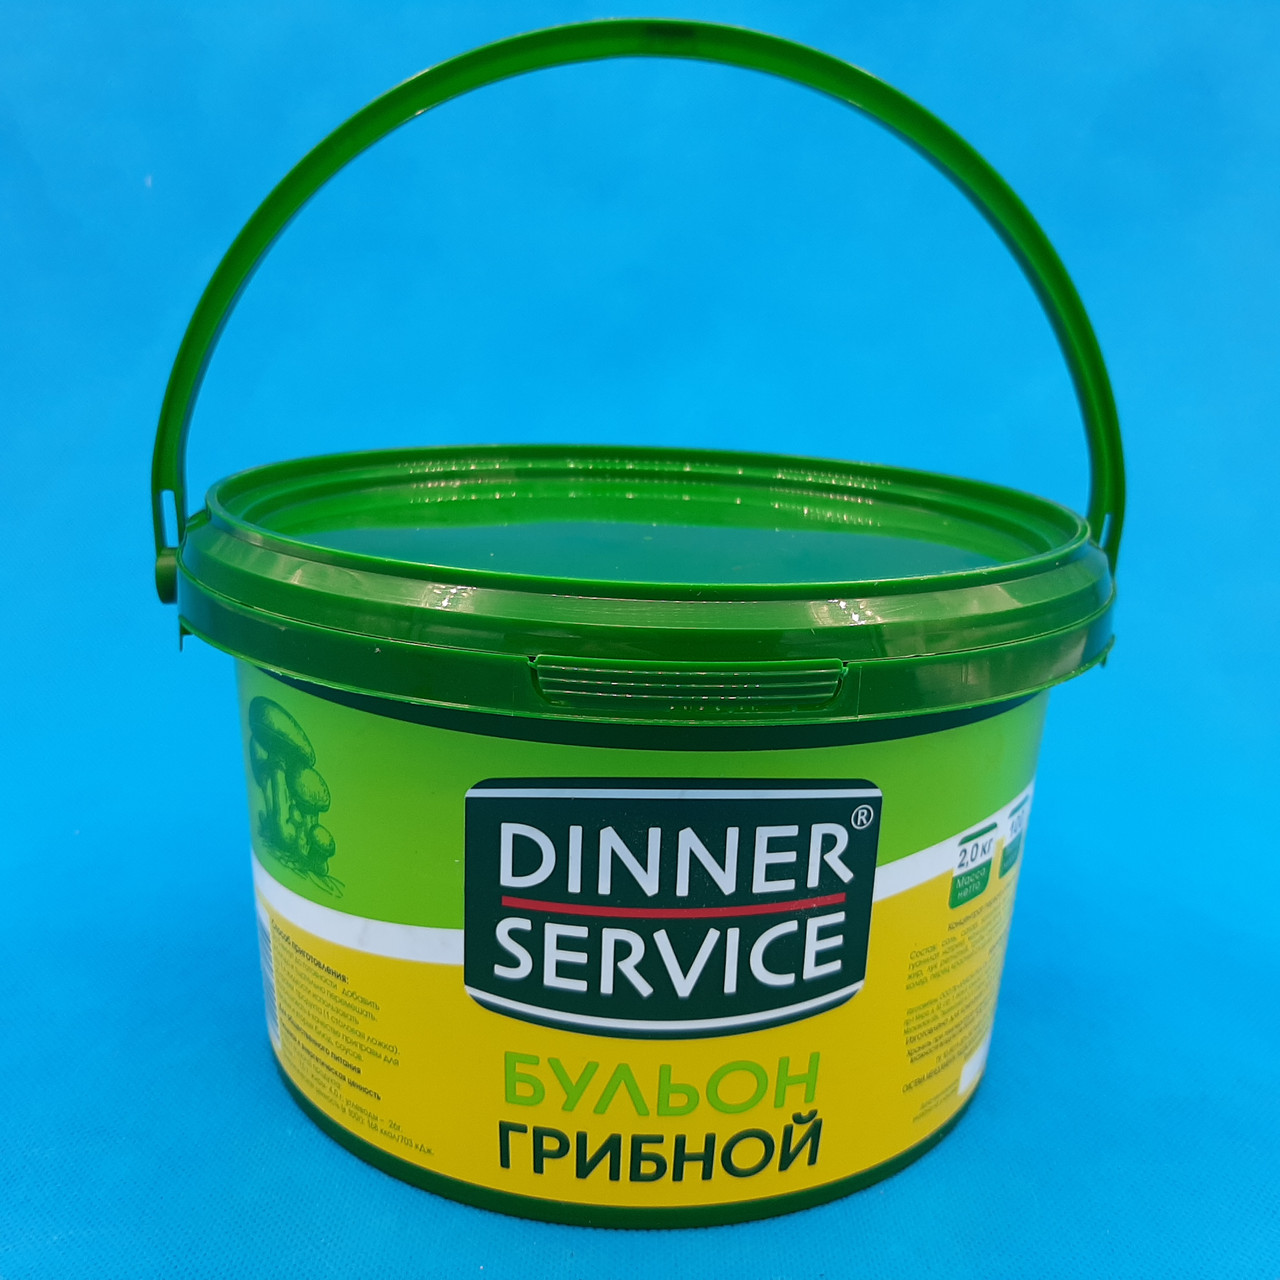 DINNER SERVICE/Бульон грибной 2 кг